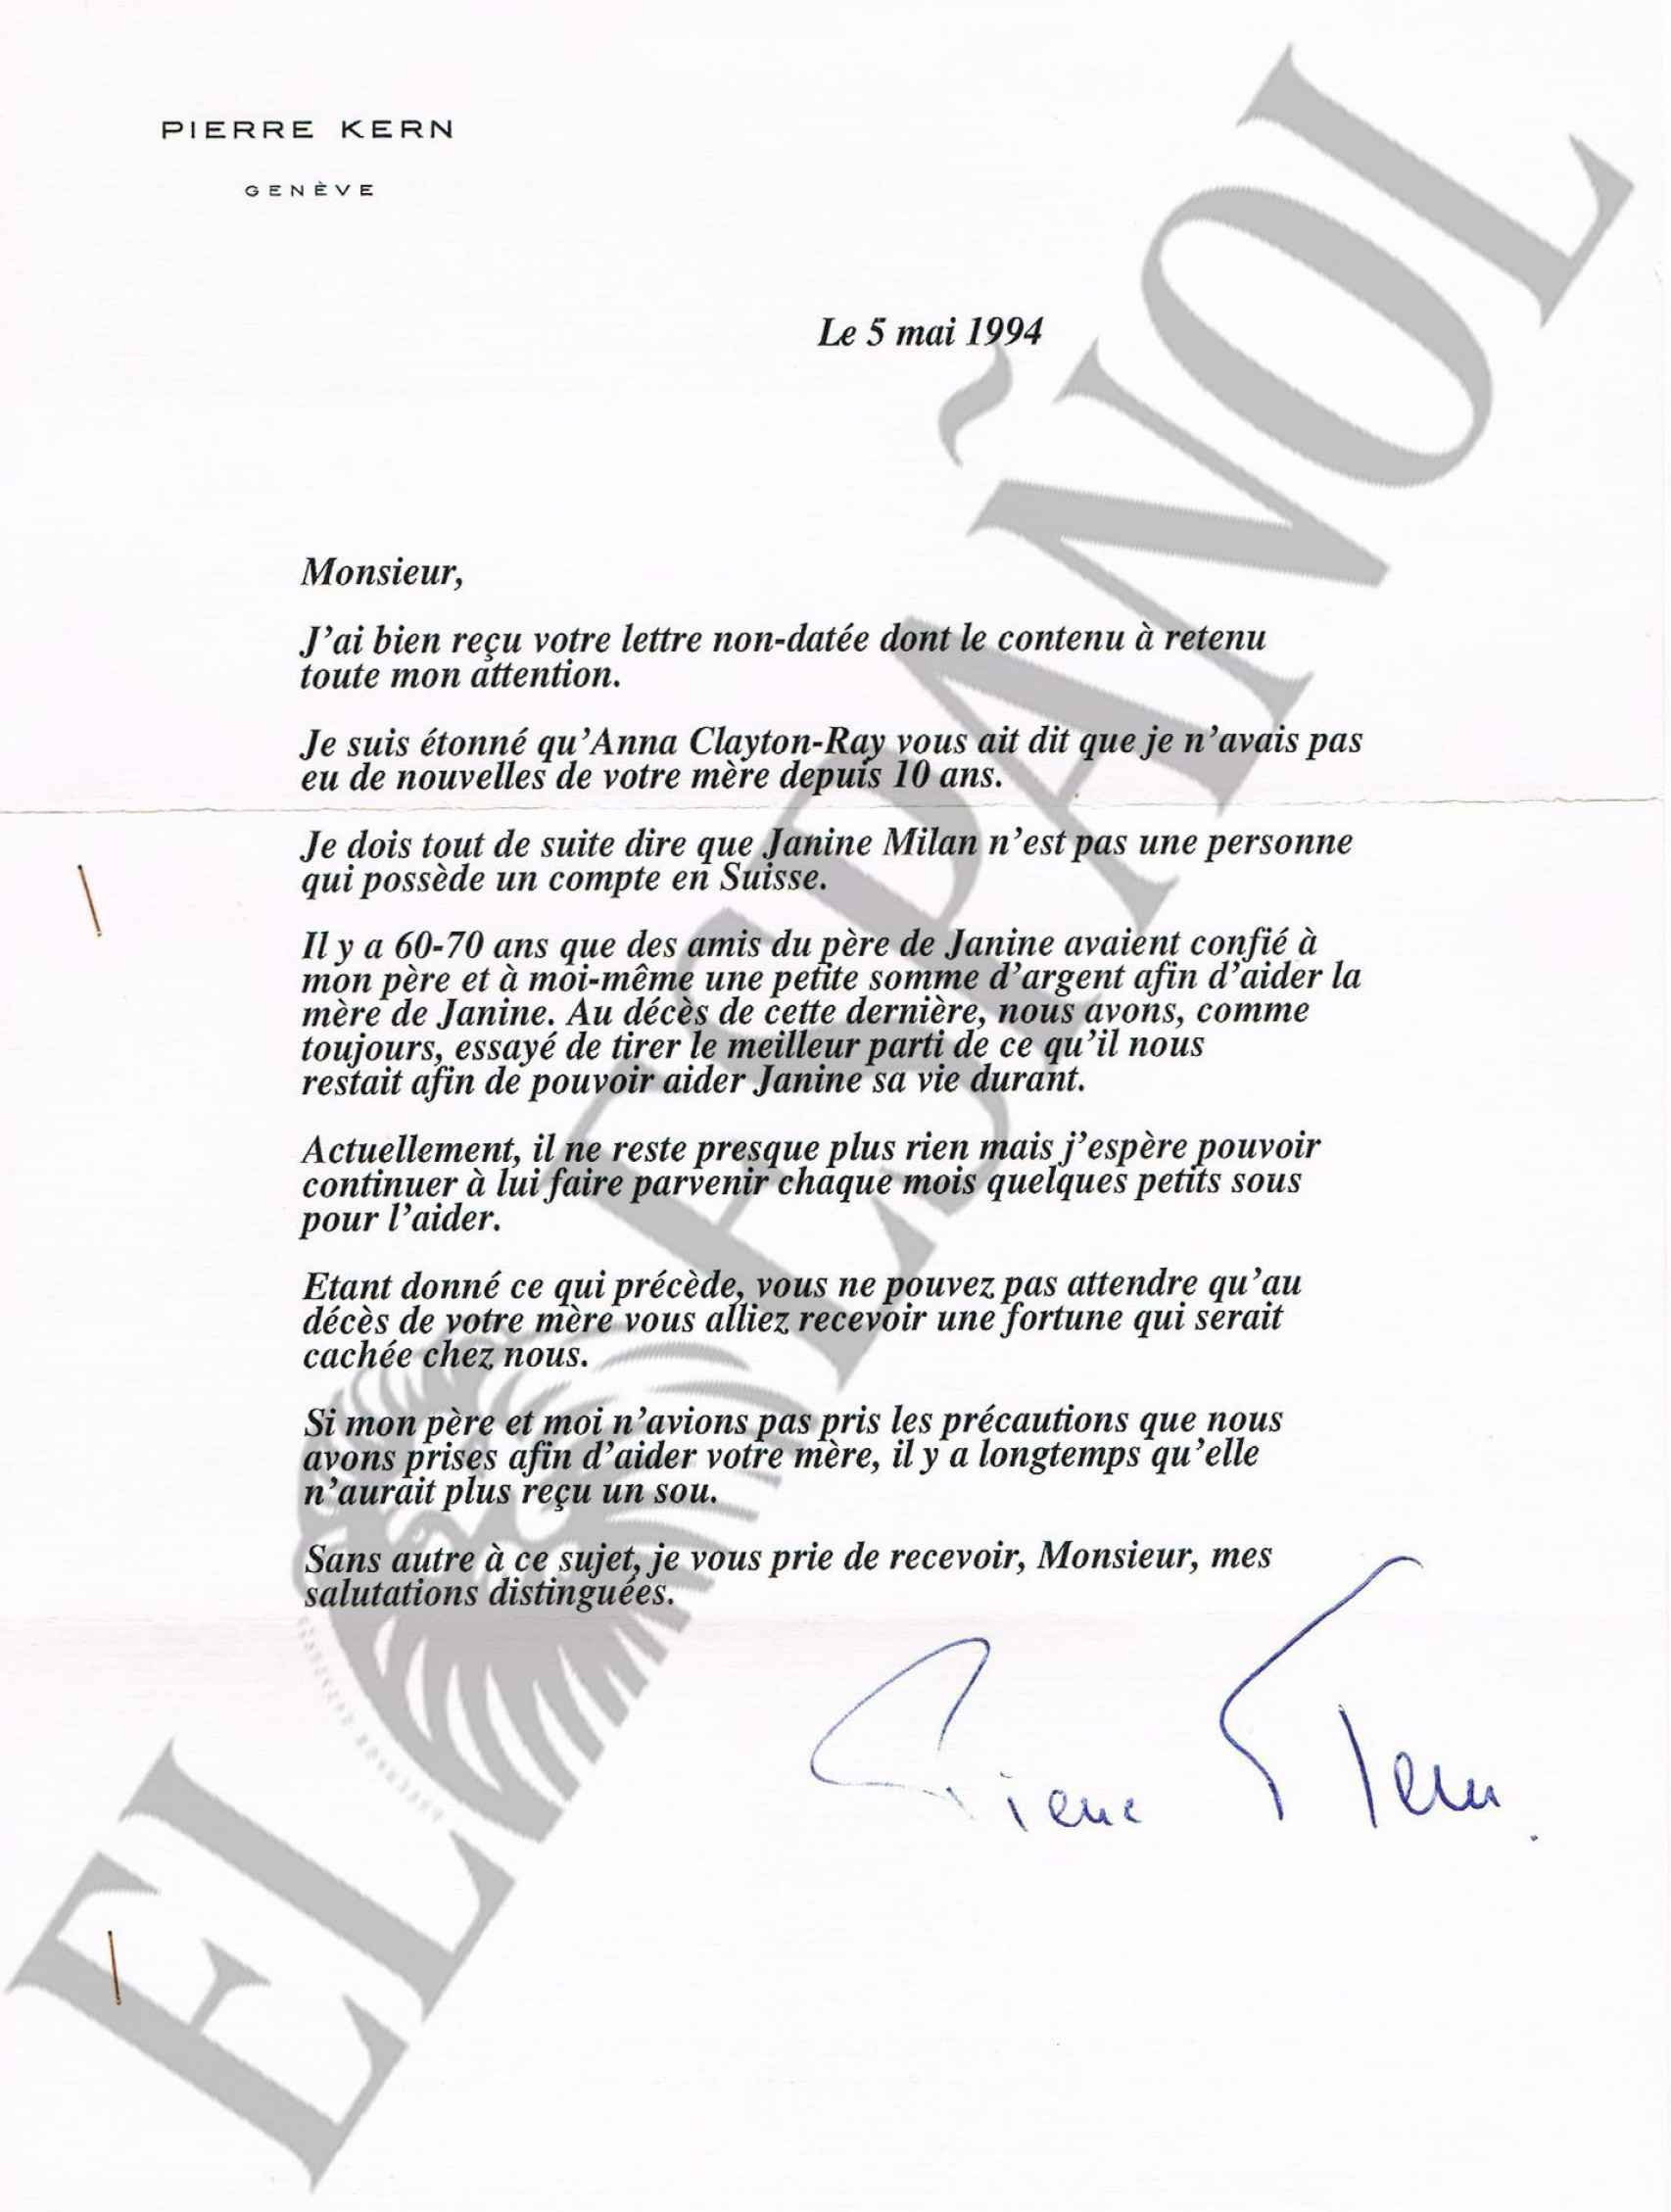 La carta que Pierre Kern envió a Pierre Emmanuel Milán como respuesta tras preguntar si su madre tenía una cuenta en el banco suizo.